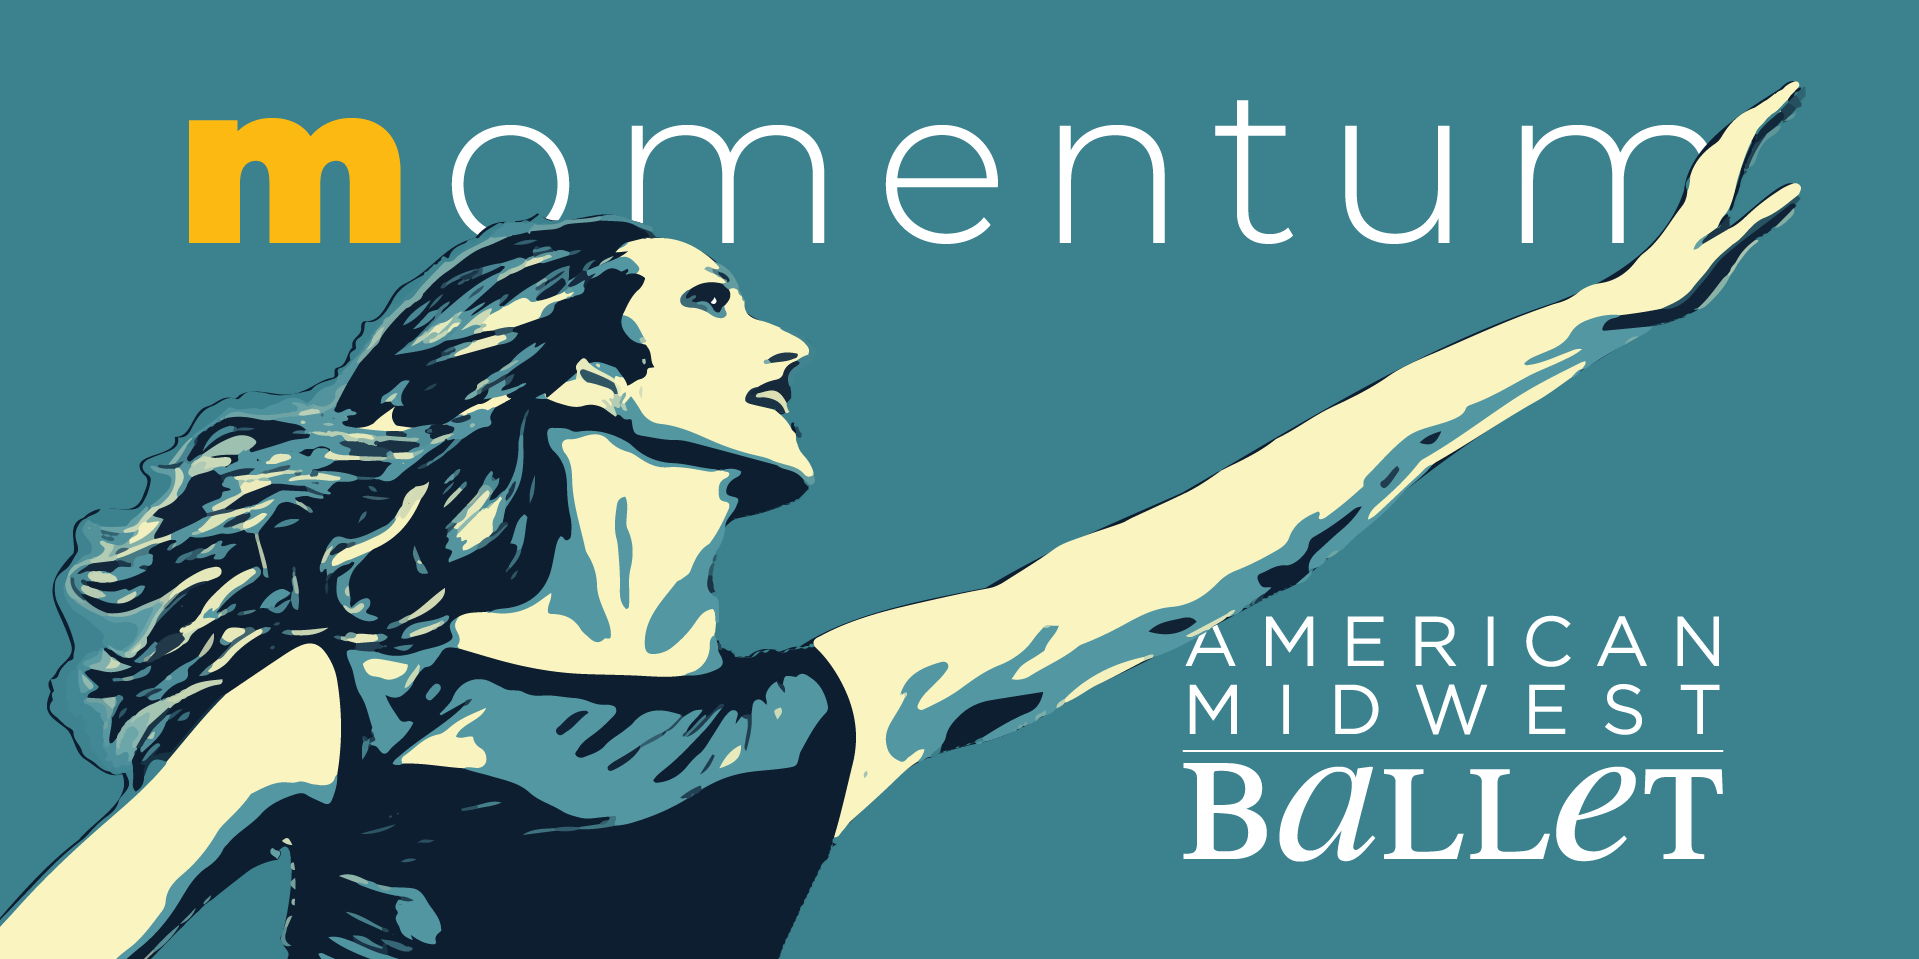 Momentum promotional image